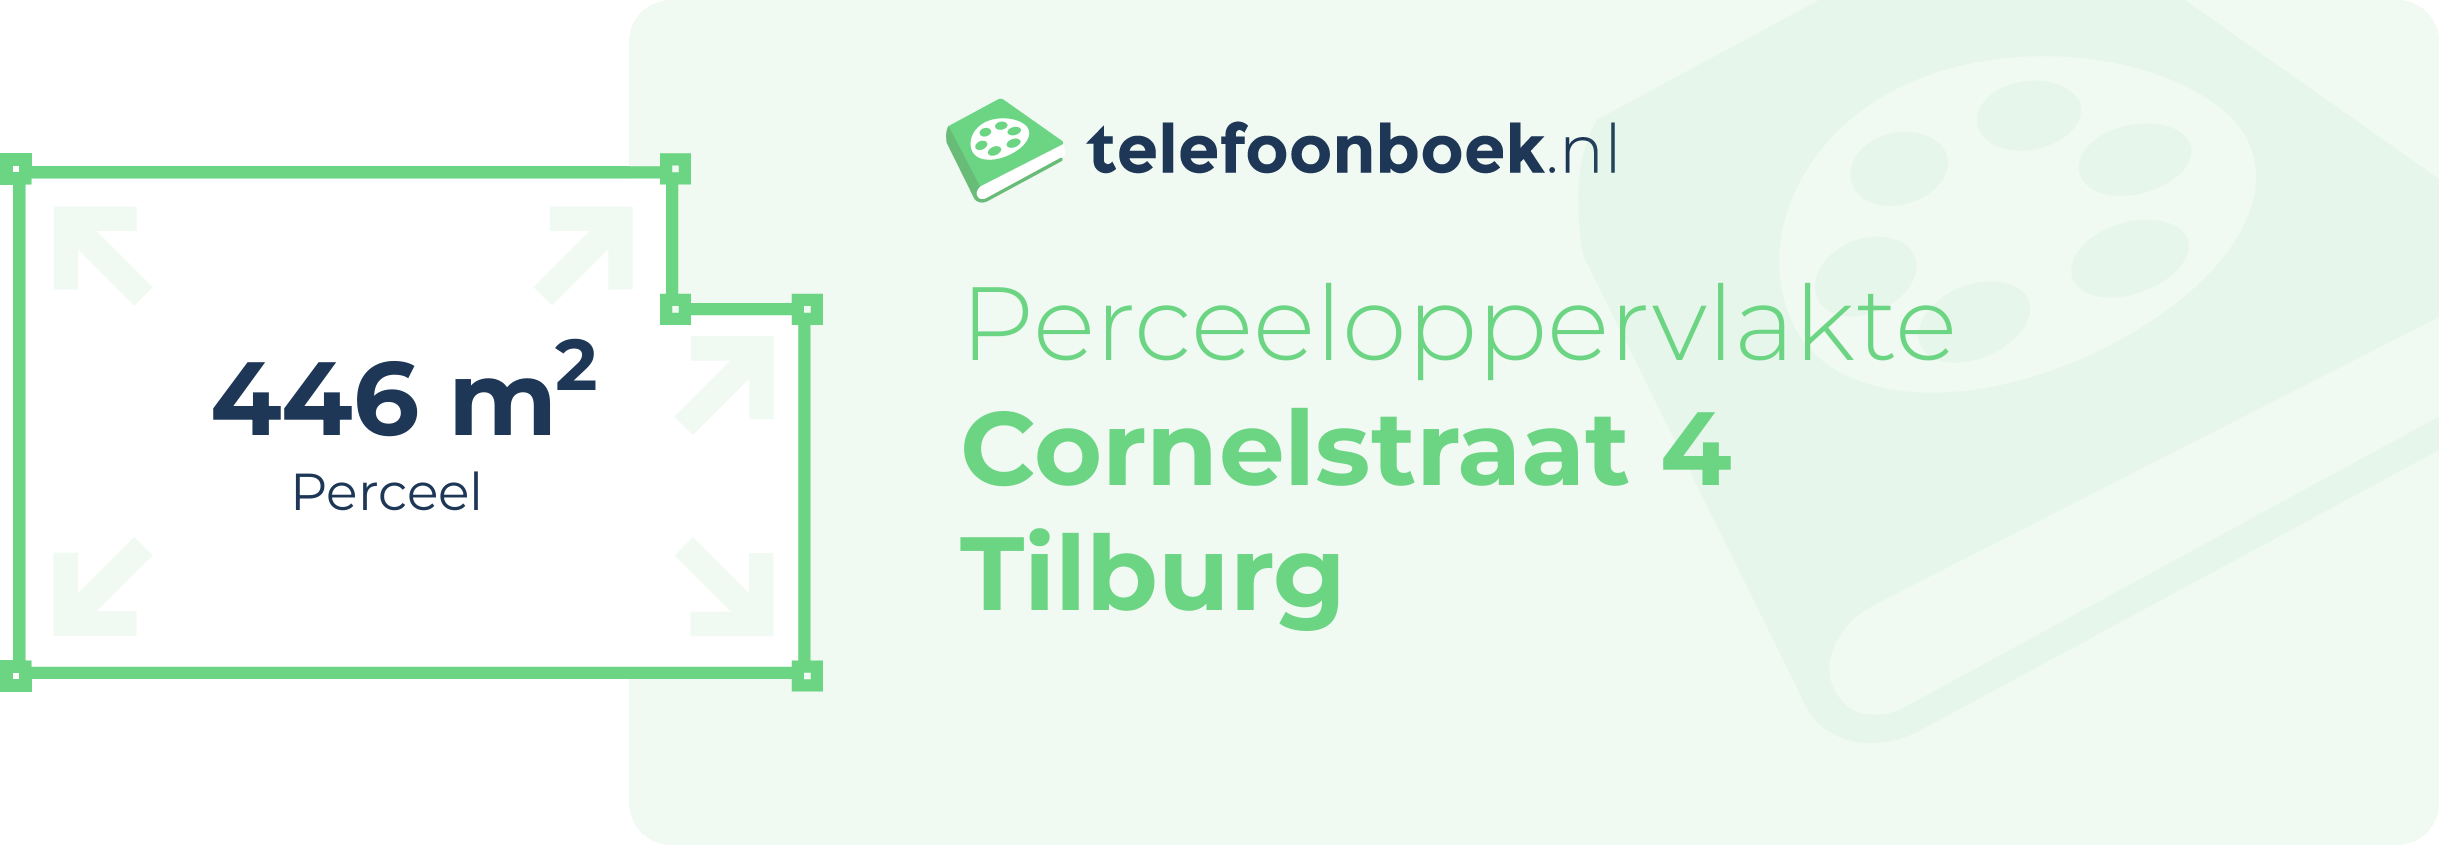 Perceeloppervlakte Cornelstraat 4 Tilburg